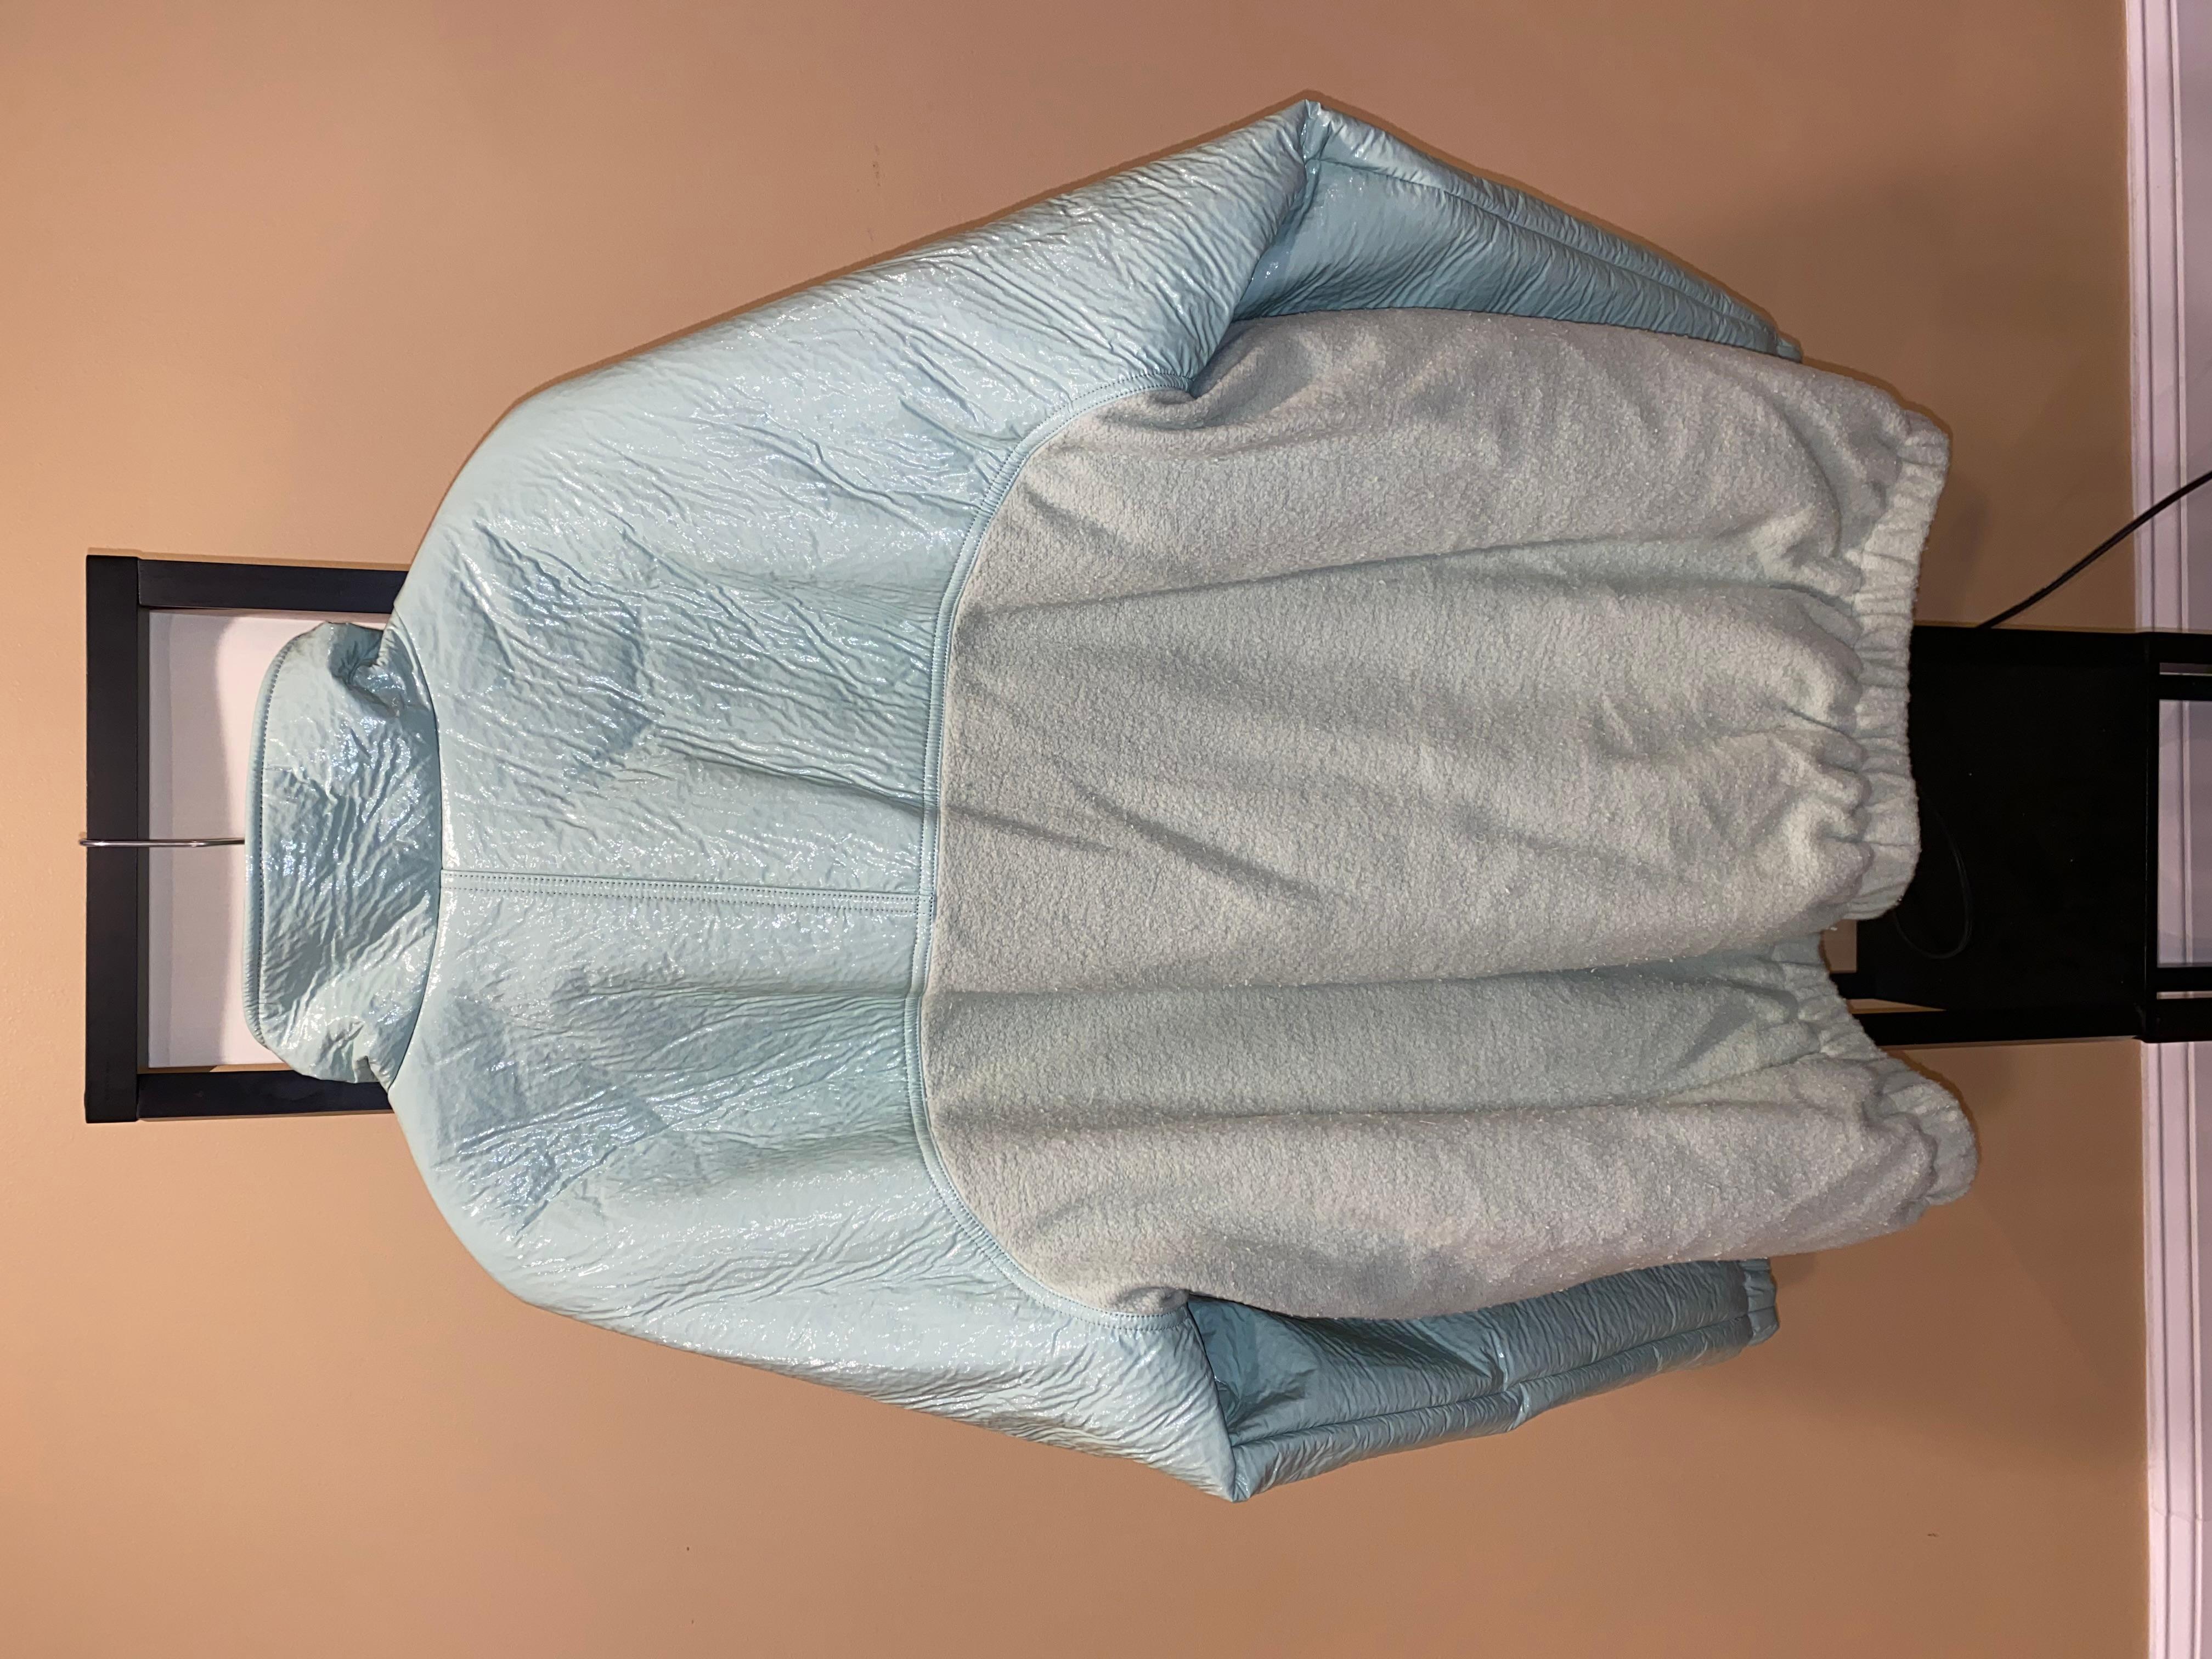 Rick Owen DRKSHDW FW20 PERFORMA PULLOVER WINDBREAKER Fleece Jacke
Größe Large
Bakterien Minze Farbe
Im Grunde brandneu. Tags enthalten. Nur anprobiert für ein Fotoshooting
Äußerst selten

Einzelhandel war $1757++